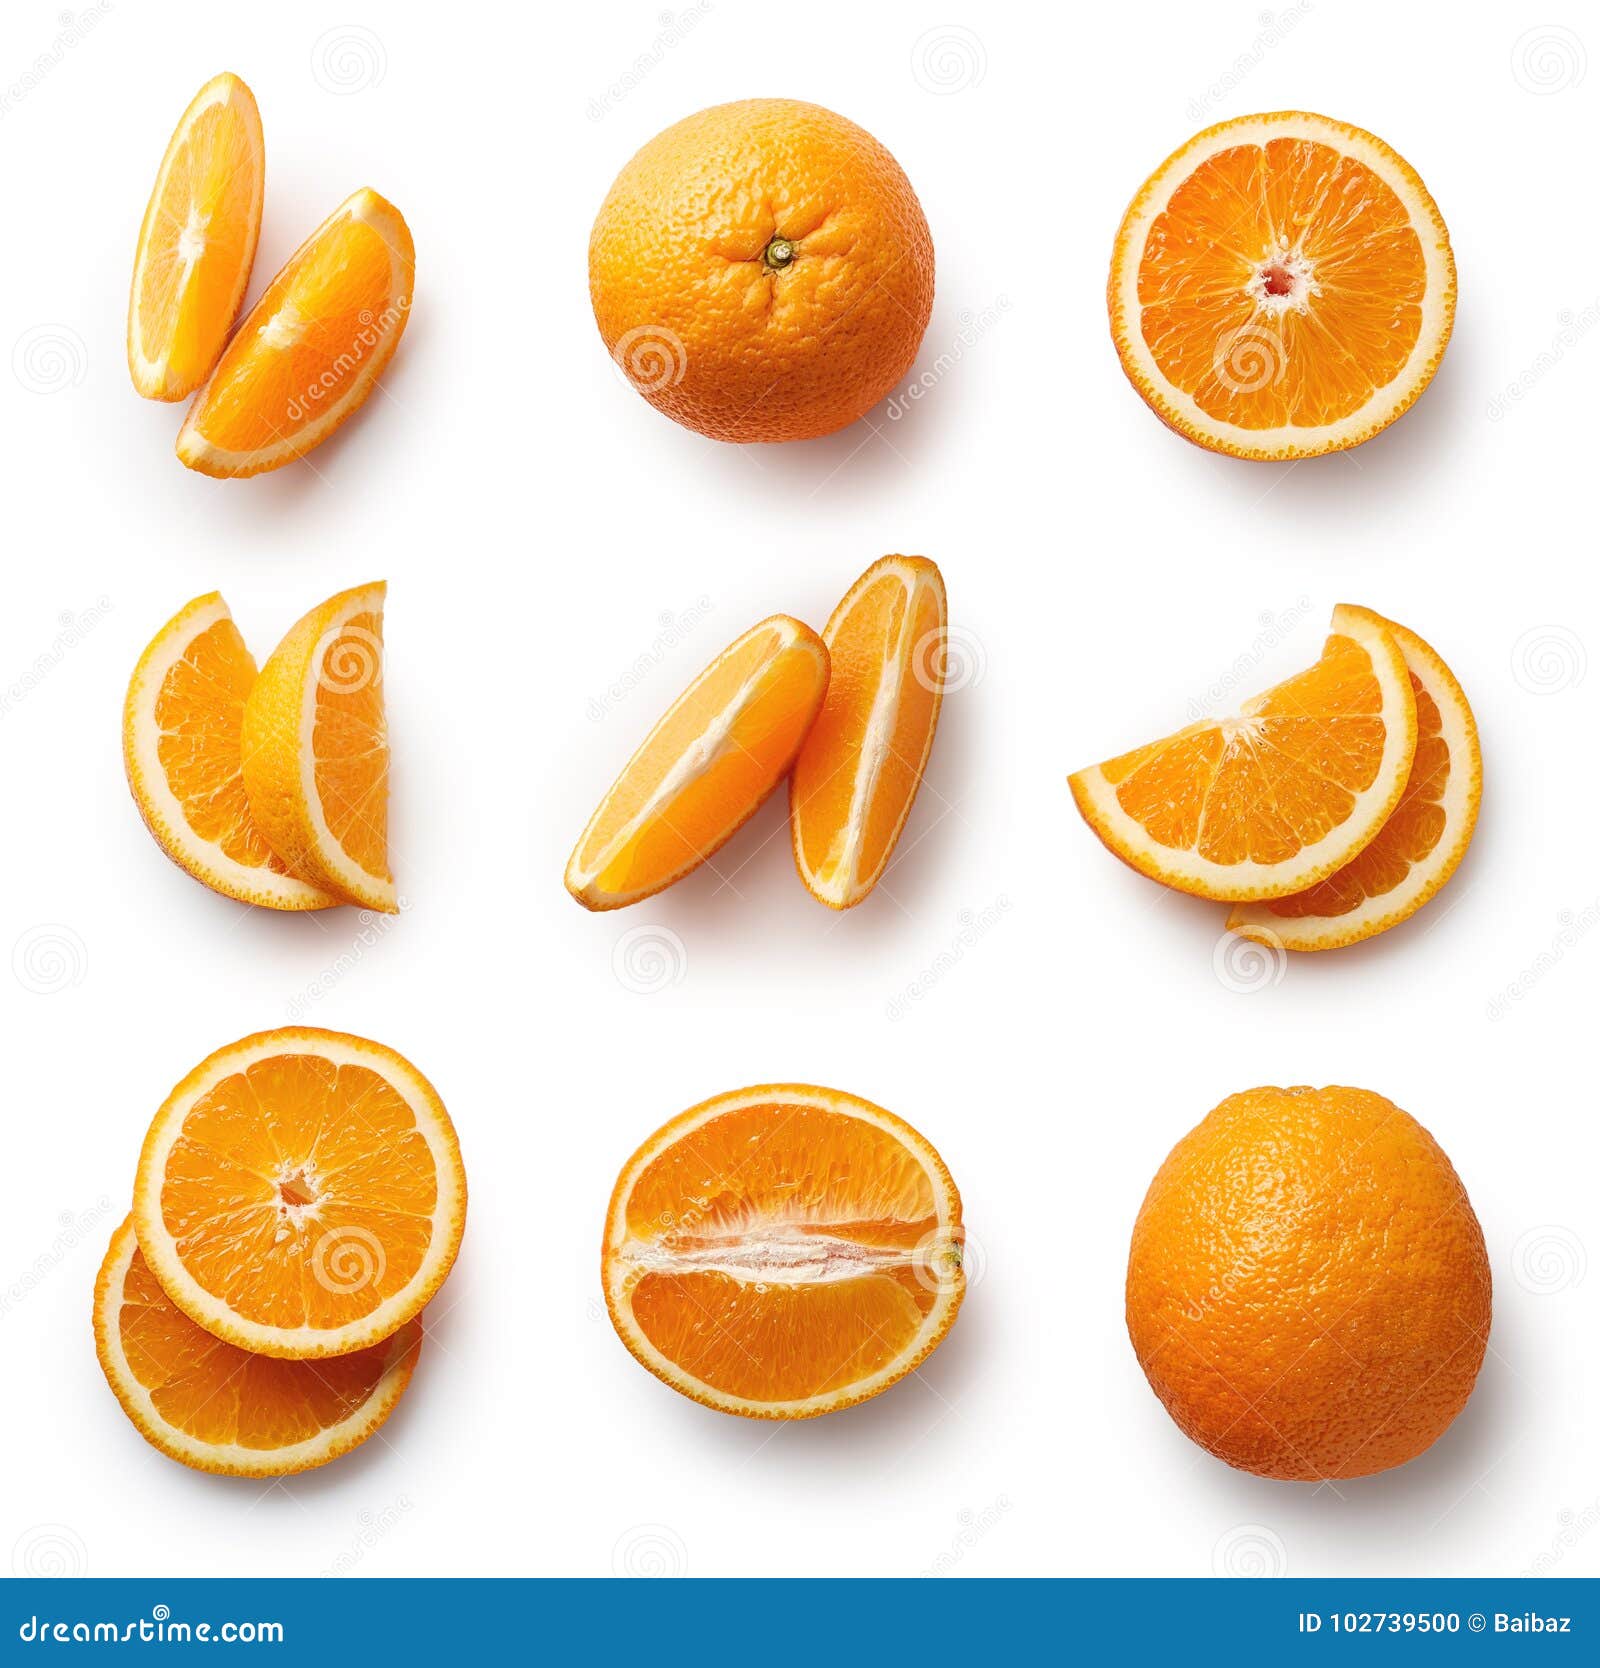 У отца есть 5 попарно различных апельсинов. Долька апельсина. Апельсин на белом фоне. Апельсин в разрезе. Долька апельсина в разрезе.